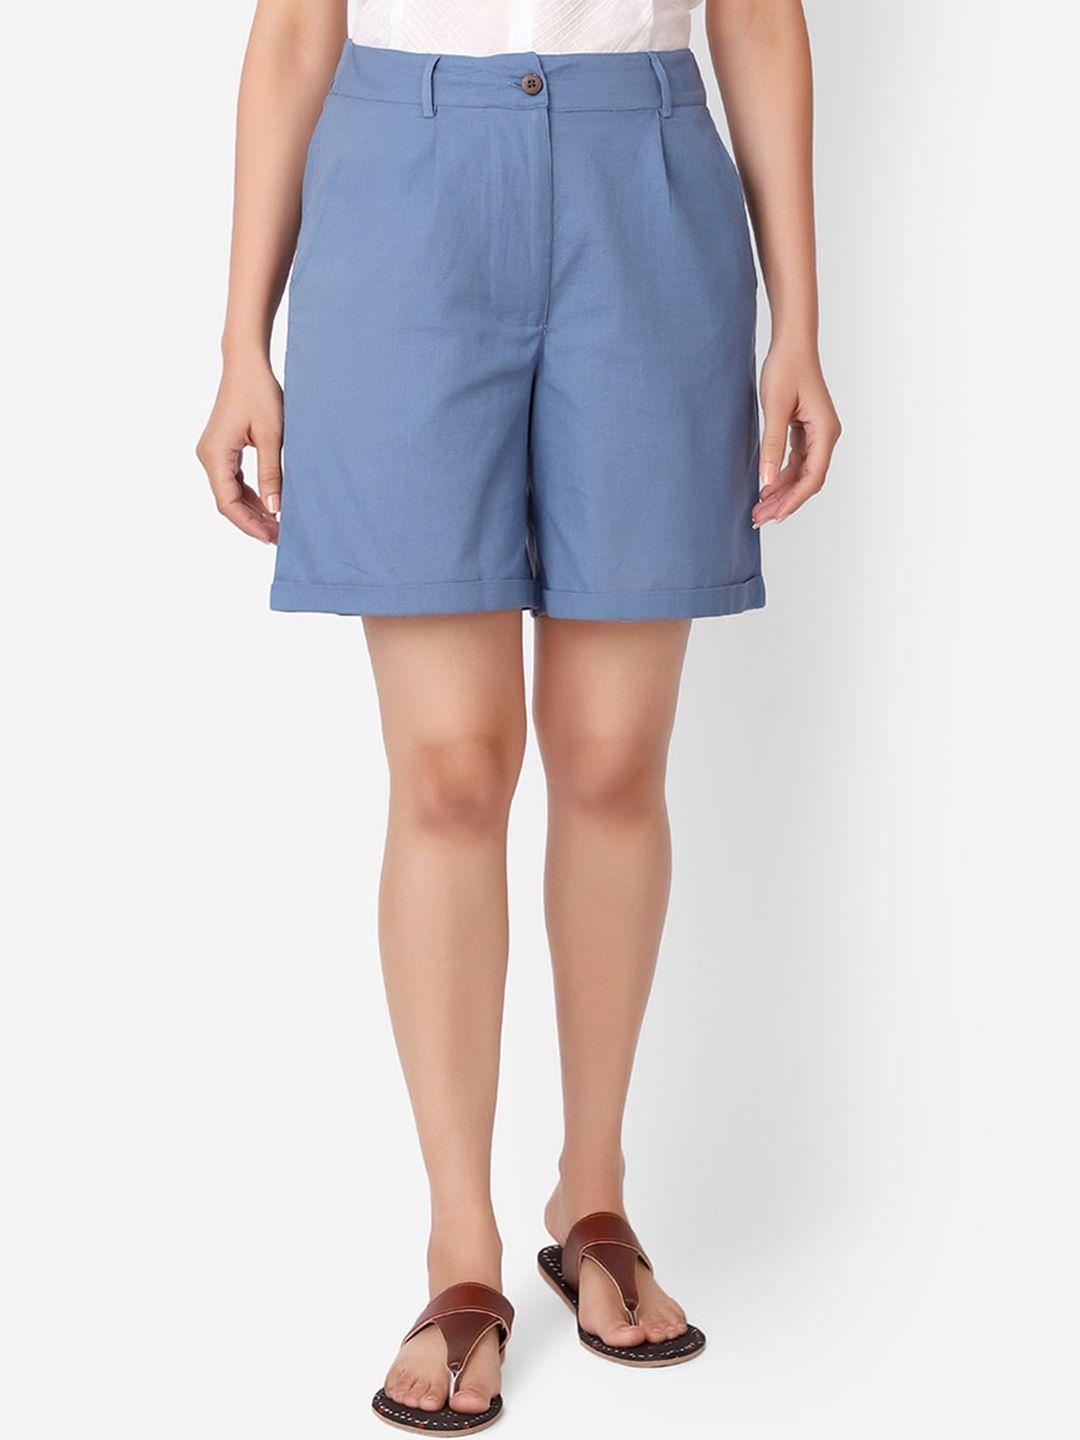 fabindia women blue linen regular shorts